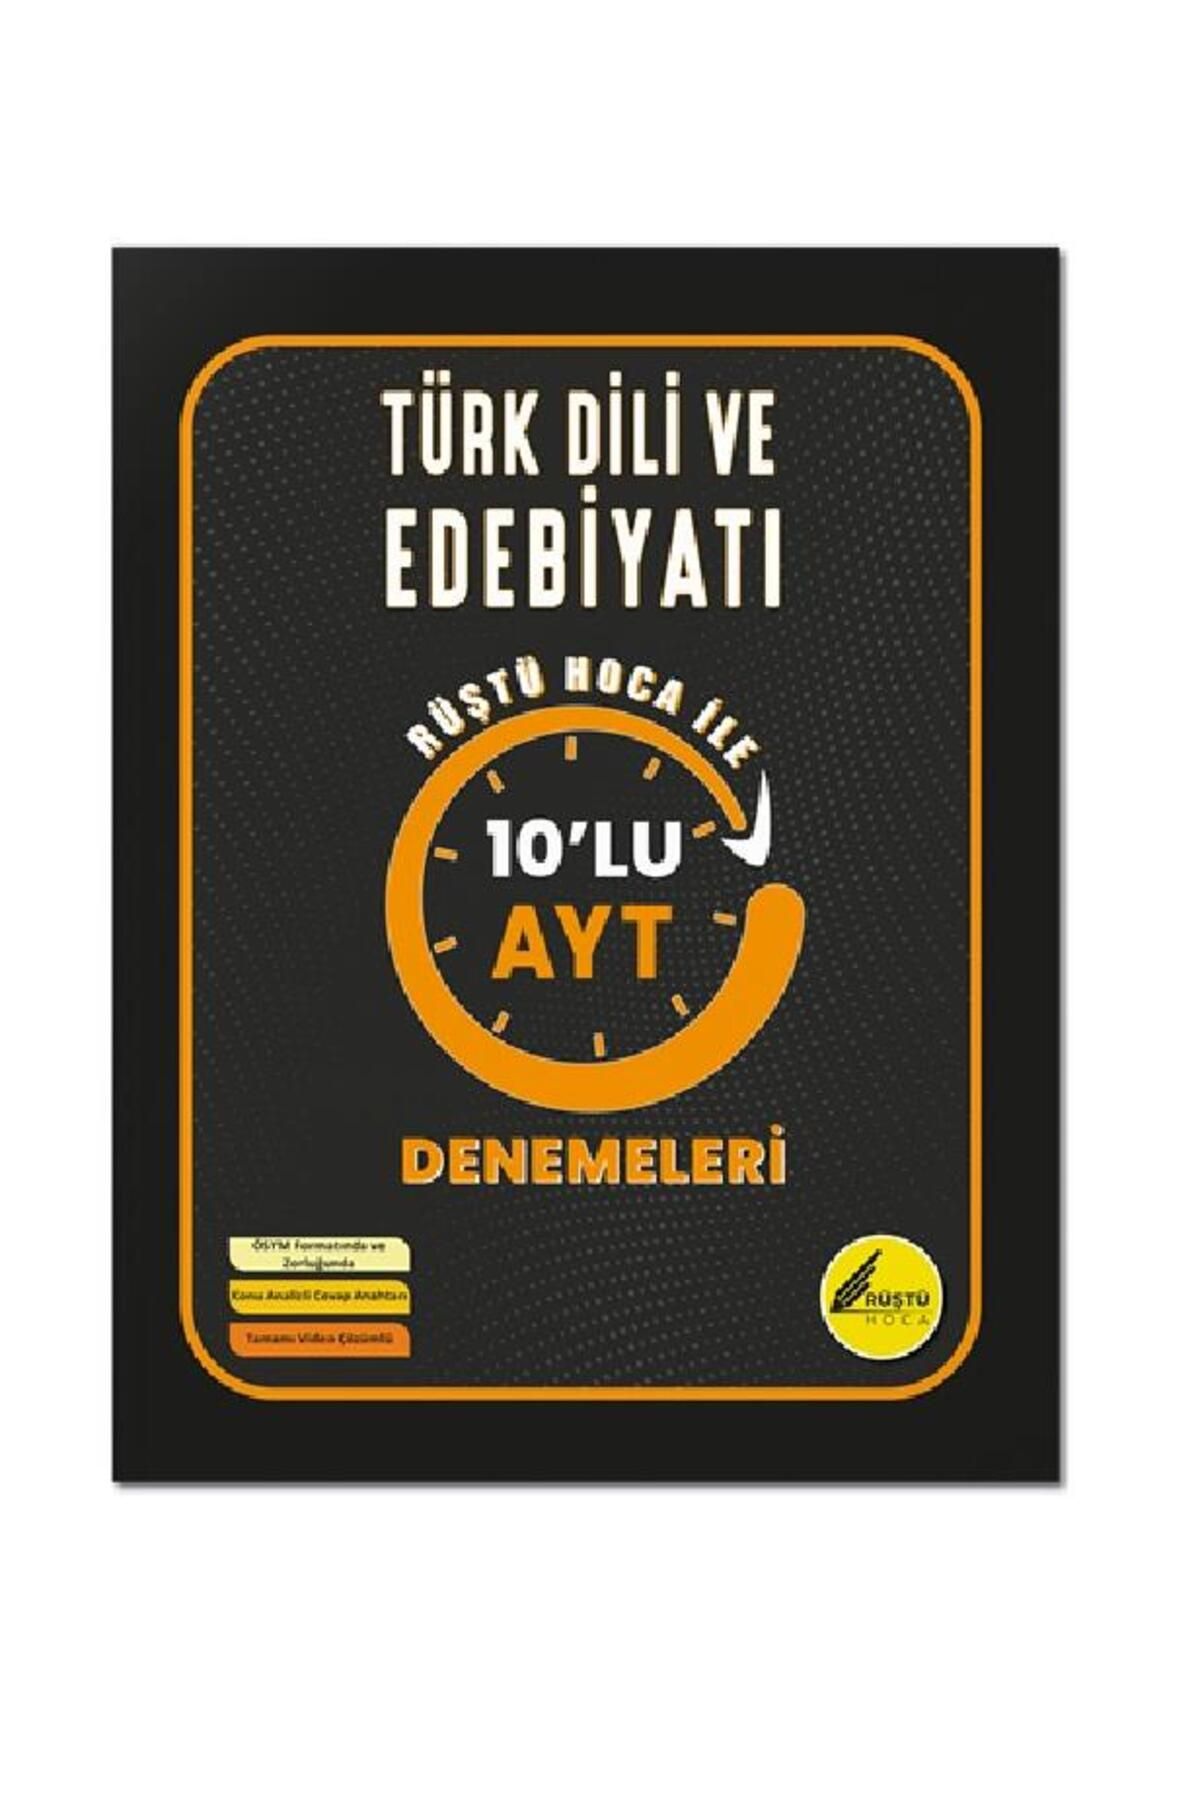 REHBER MATEMATİK YAYINLARI Rüştü Hoca Türk Dili ve Edebiyatı 10'lu AYT Denemeleri